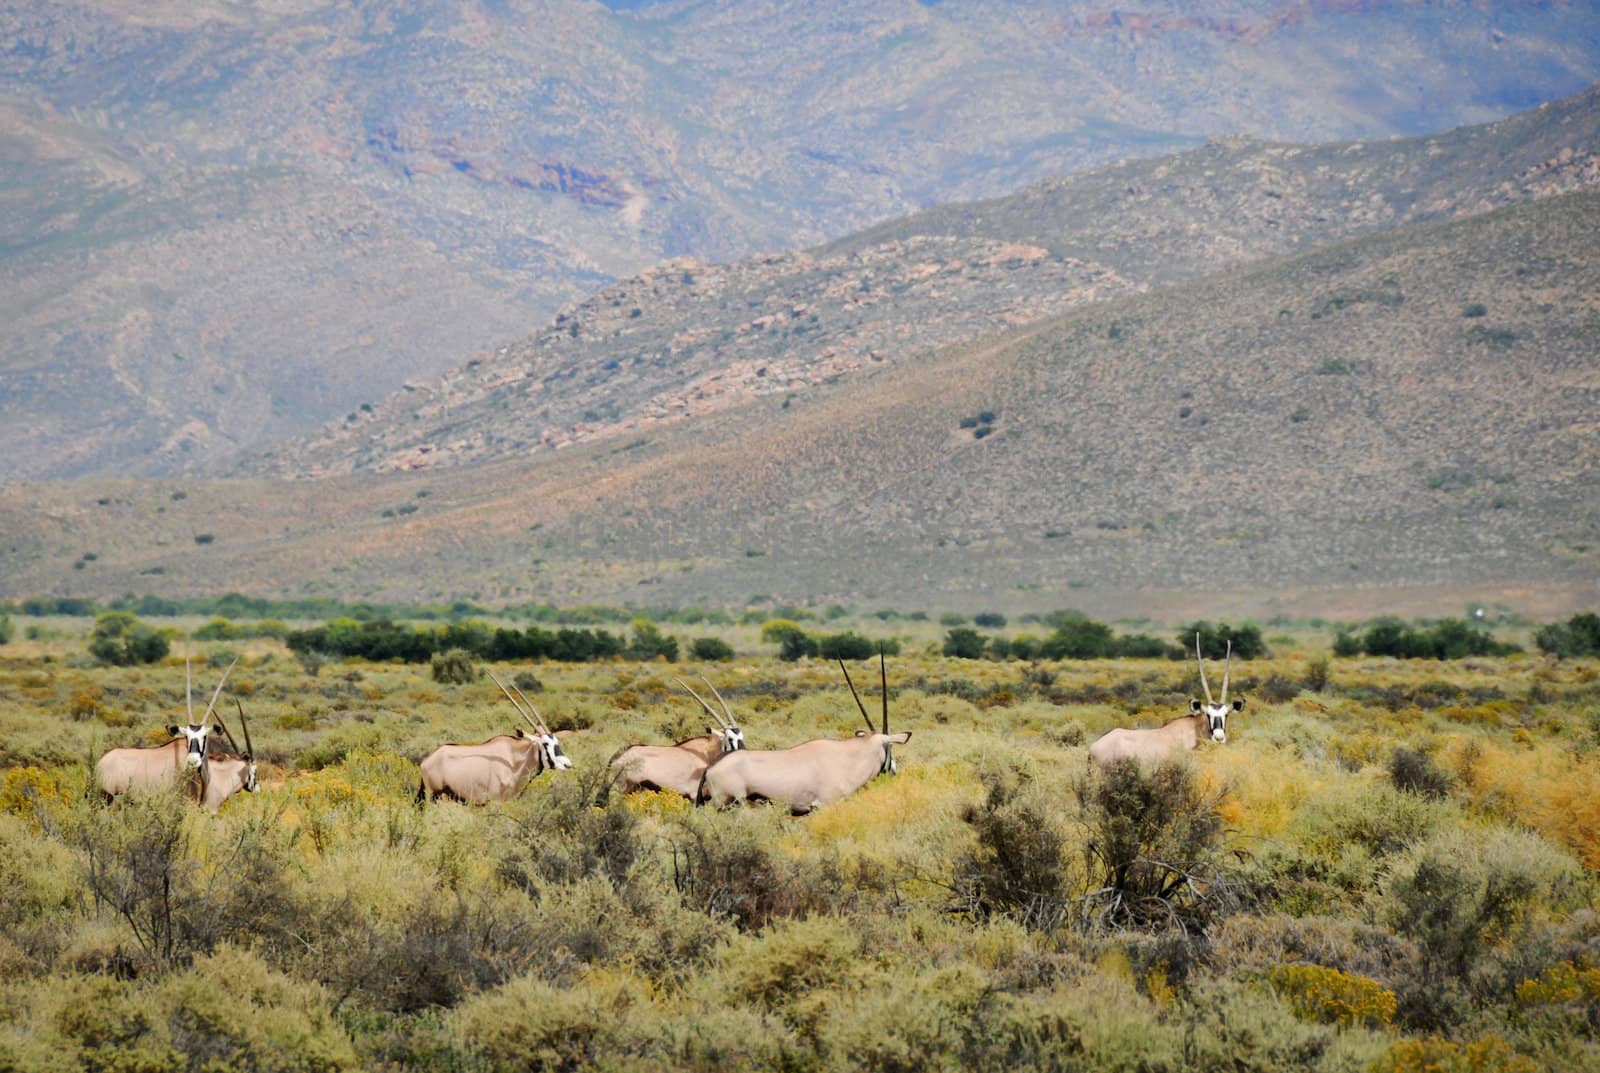 Gemsbok antelopes at South African bush by iryna_rasko